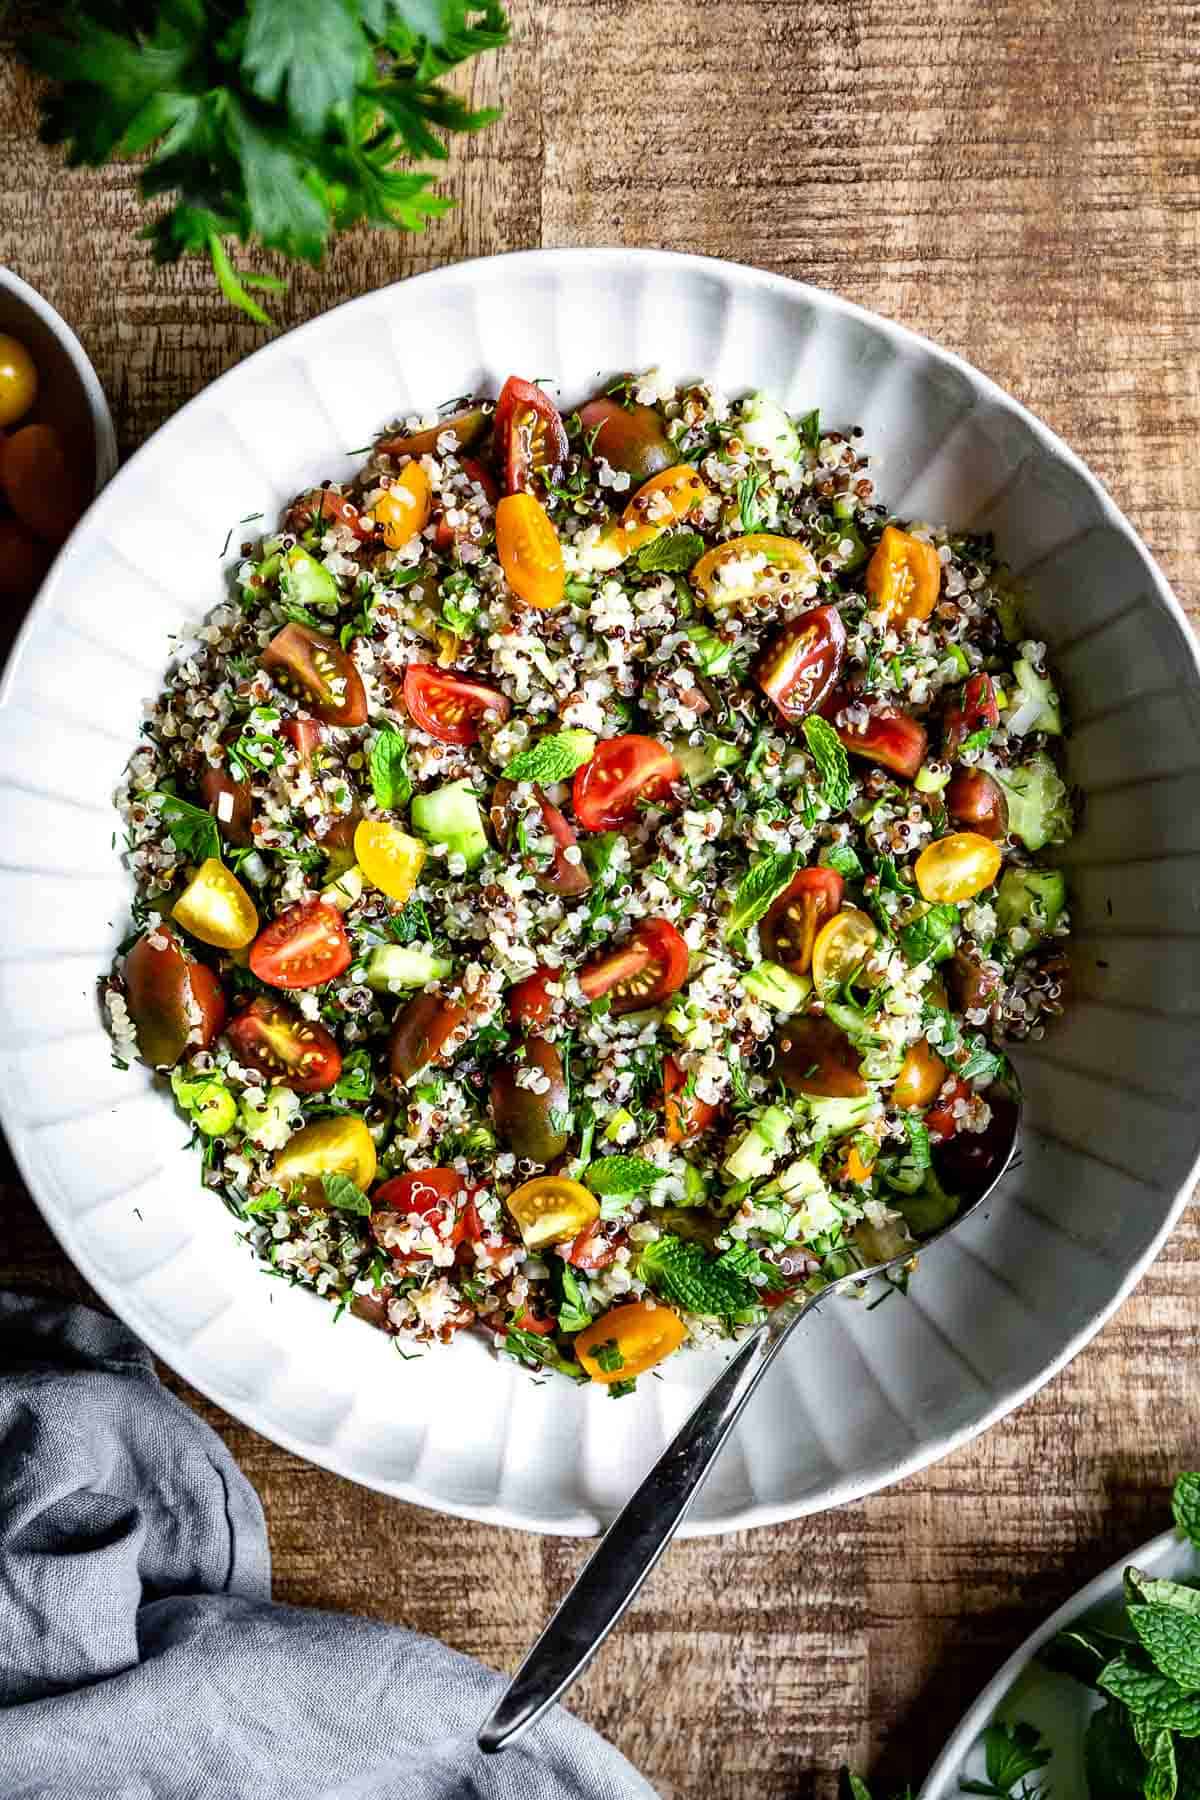 https://foolproofliving.com/wp-content/uploads/2021/09/Quinoa-Salad-Recipes-Ideas.jpg